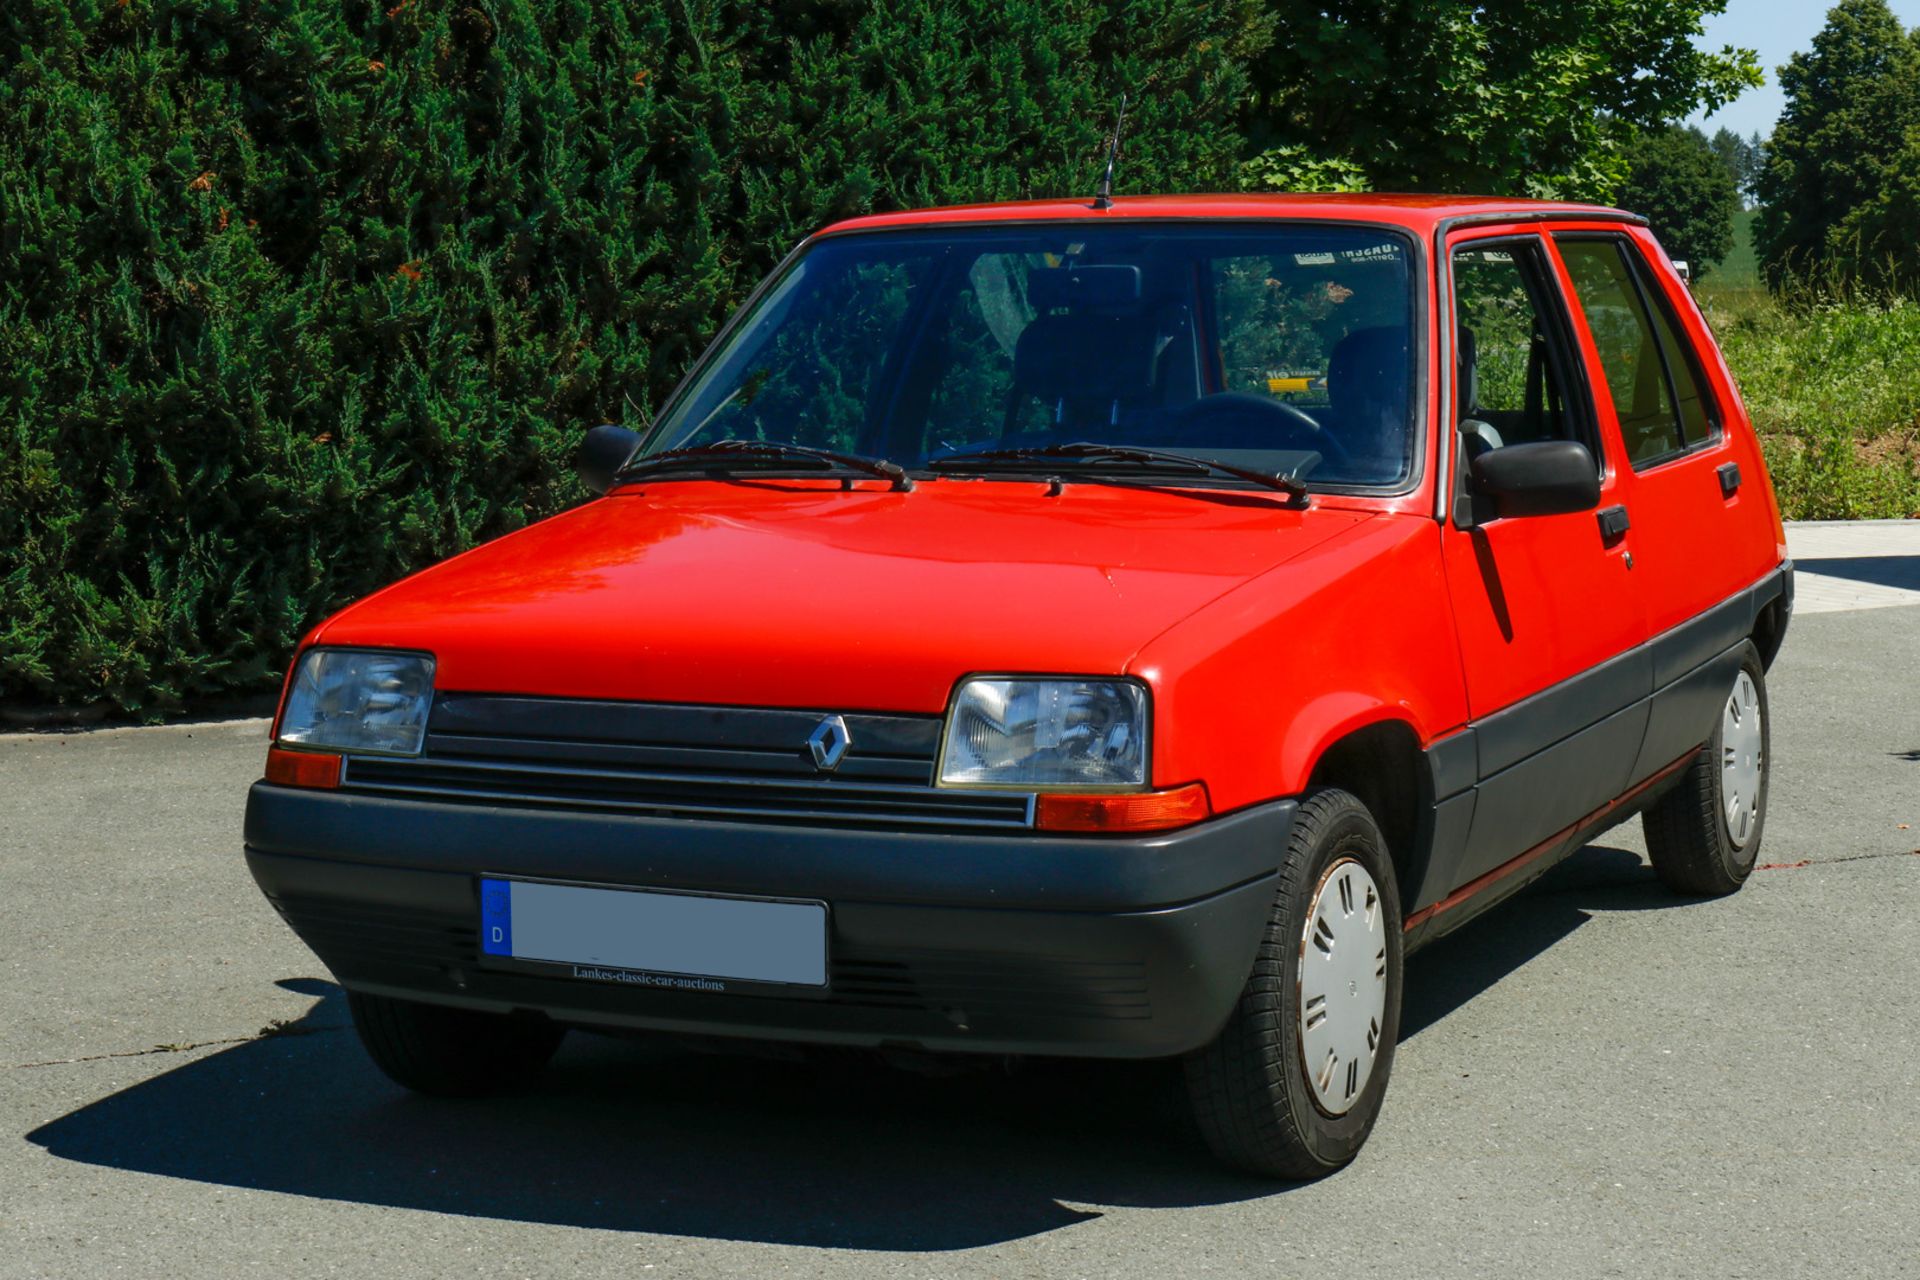 Renault R5, VP1B40 301G05 20581, Bj. 2.4.1986, KW49/5250, 5-Türig, Automatic, Original - Image 3 of 26